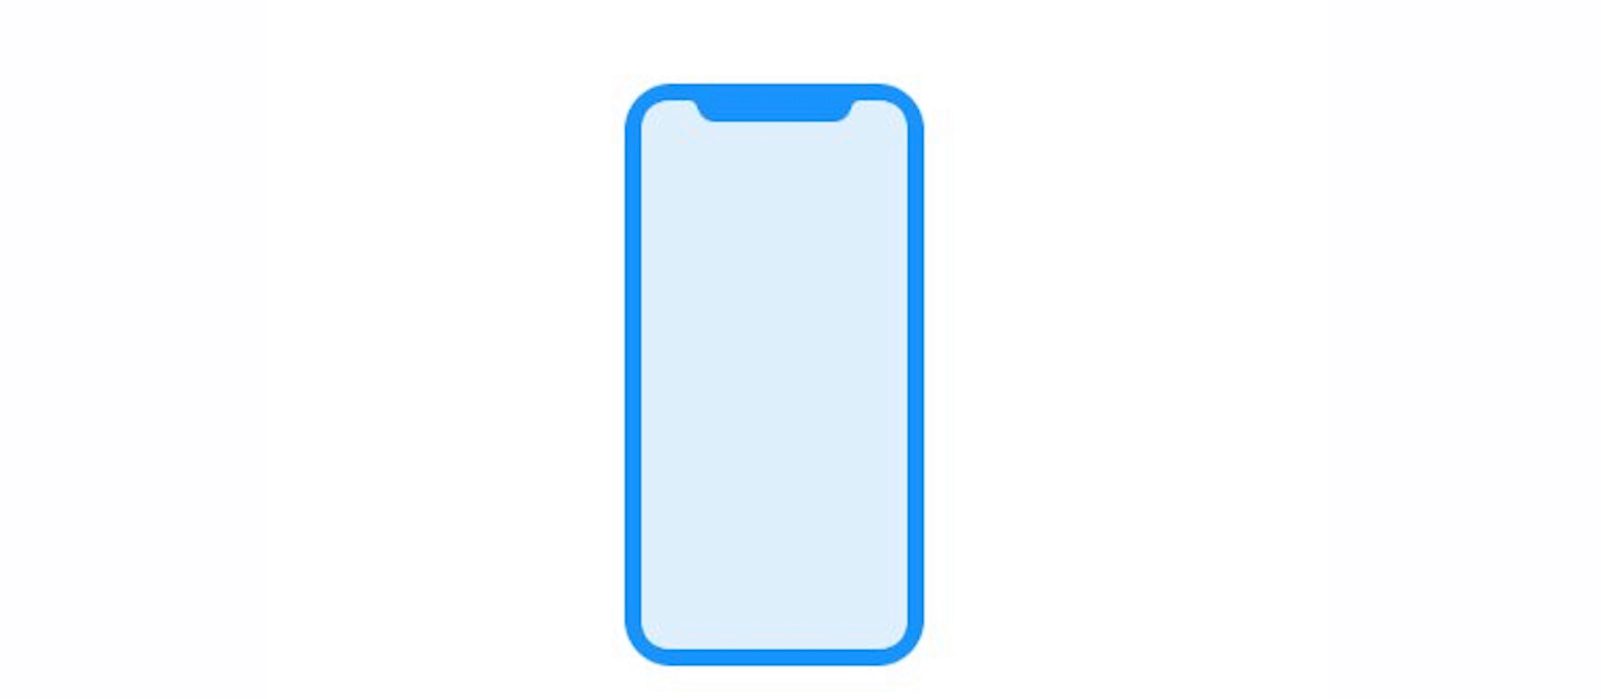 ｢iPhone 8｣、画面の縦長化とホームインジケーターバーの採用によりキーボードの配列も一部変更へ